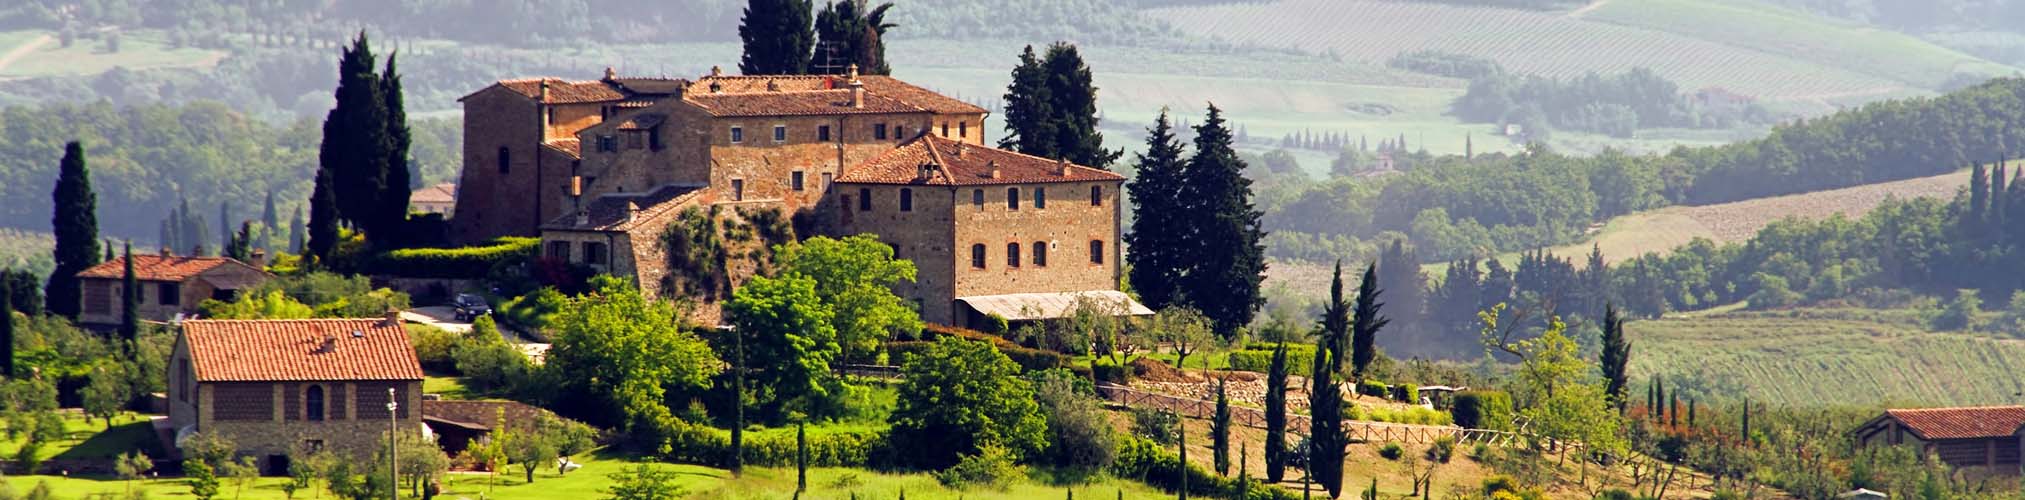 Casa printre dealurile pline cu vie in Toscana Italia, top atractii in europa